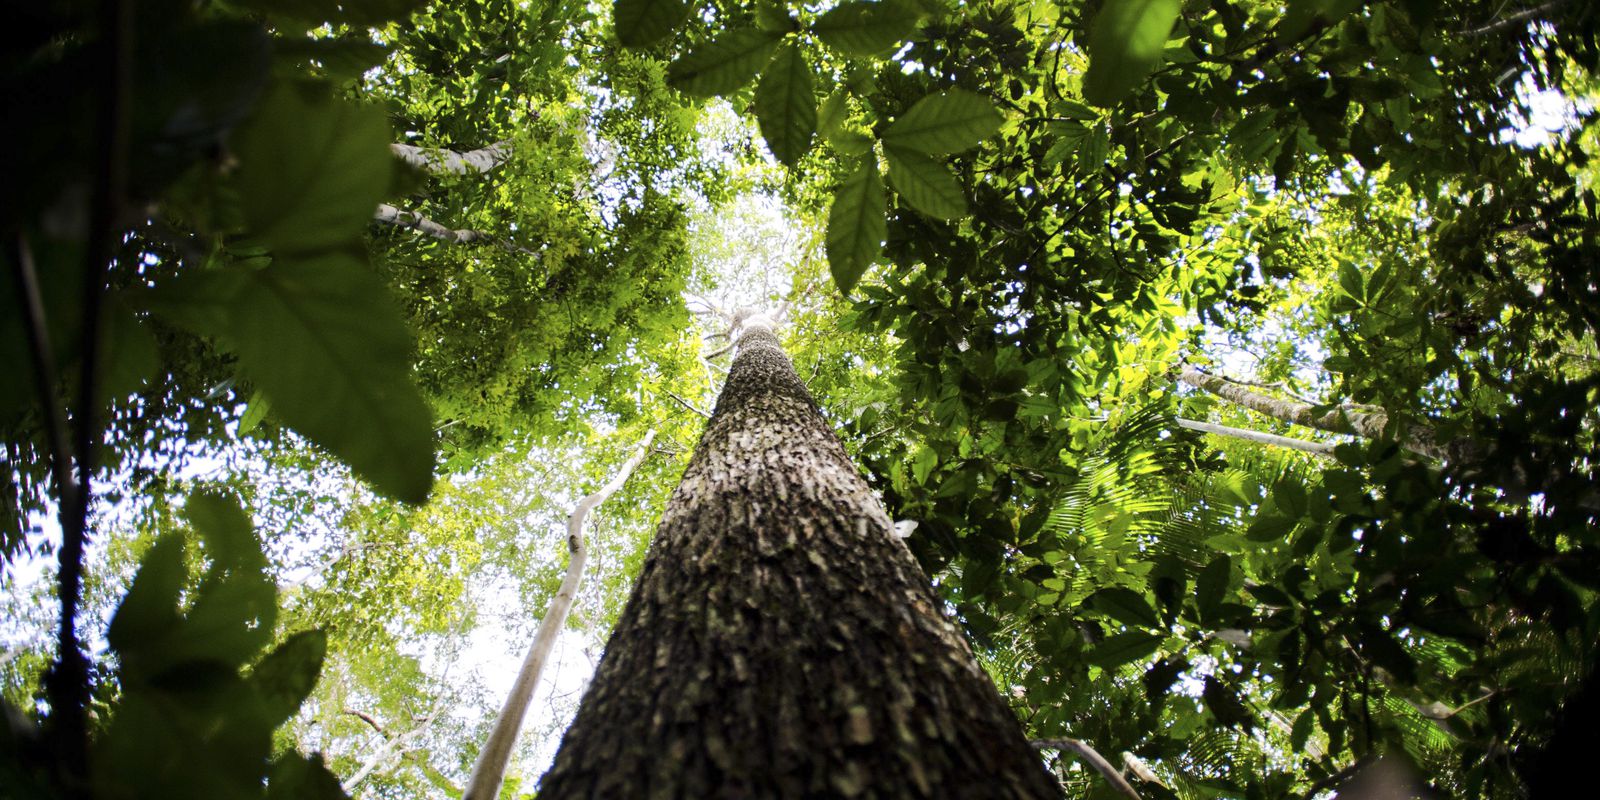 Brazil, Indonesia and Congo unite to preserve rainforests